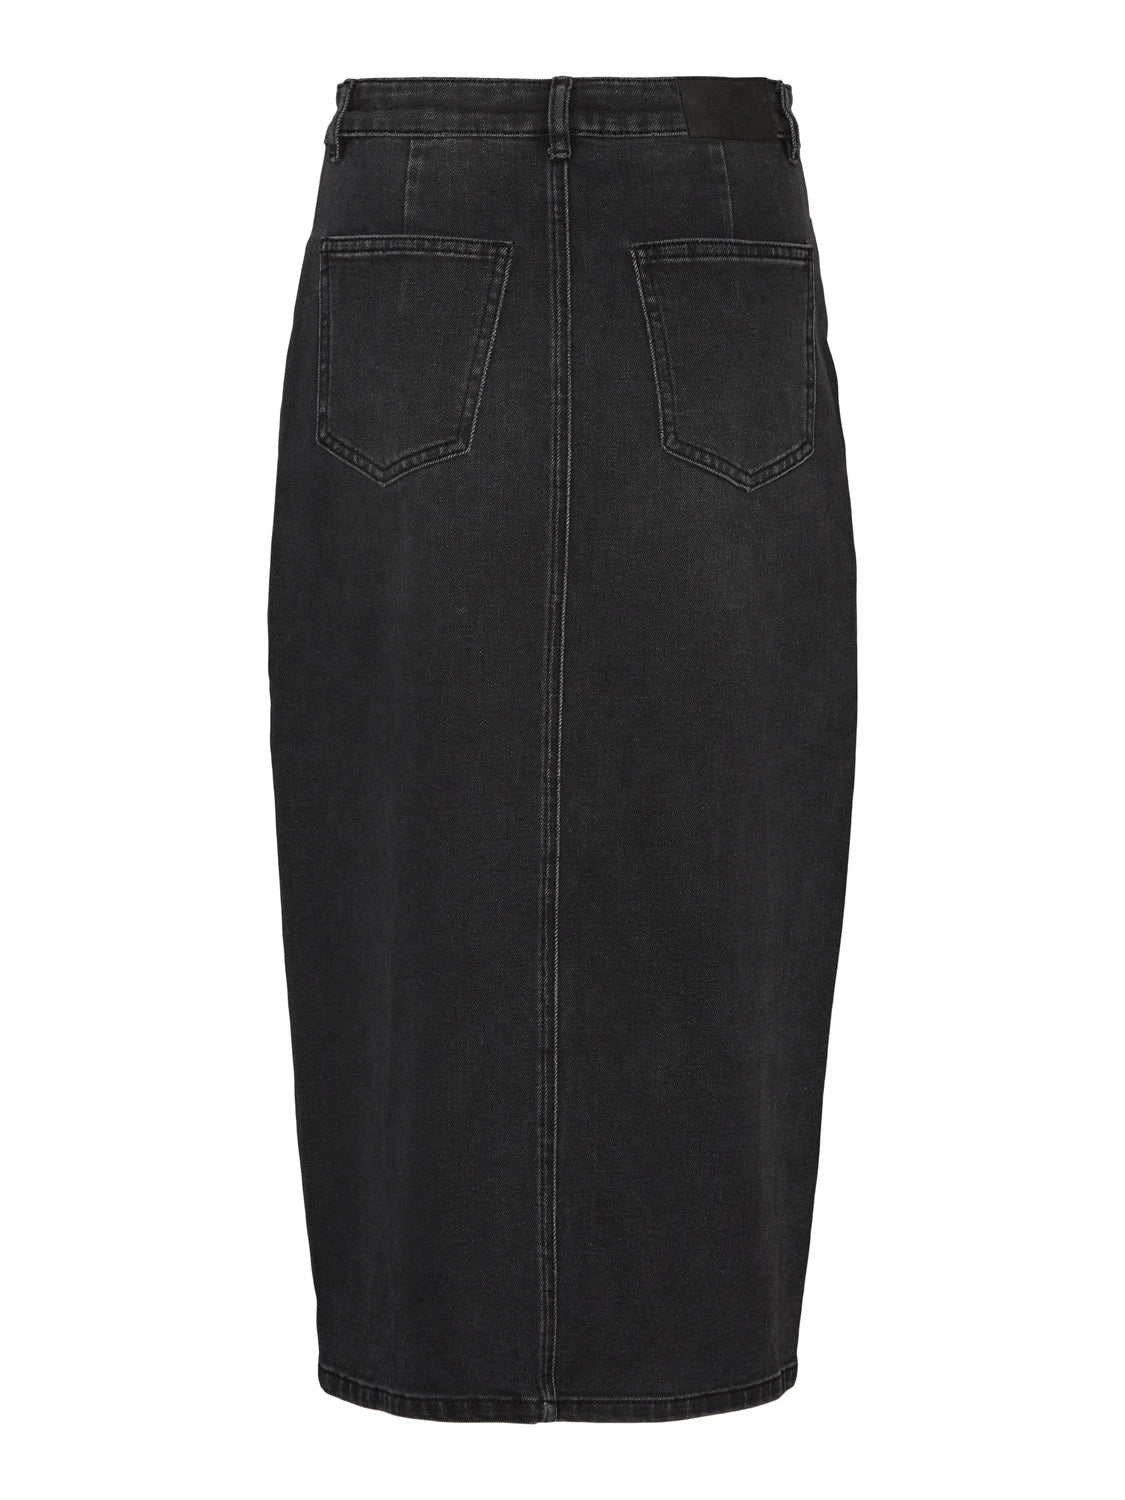 Denim High Waist Skirt - Black